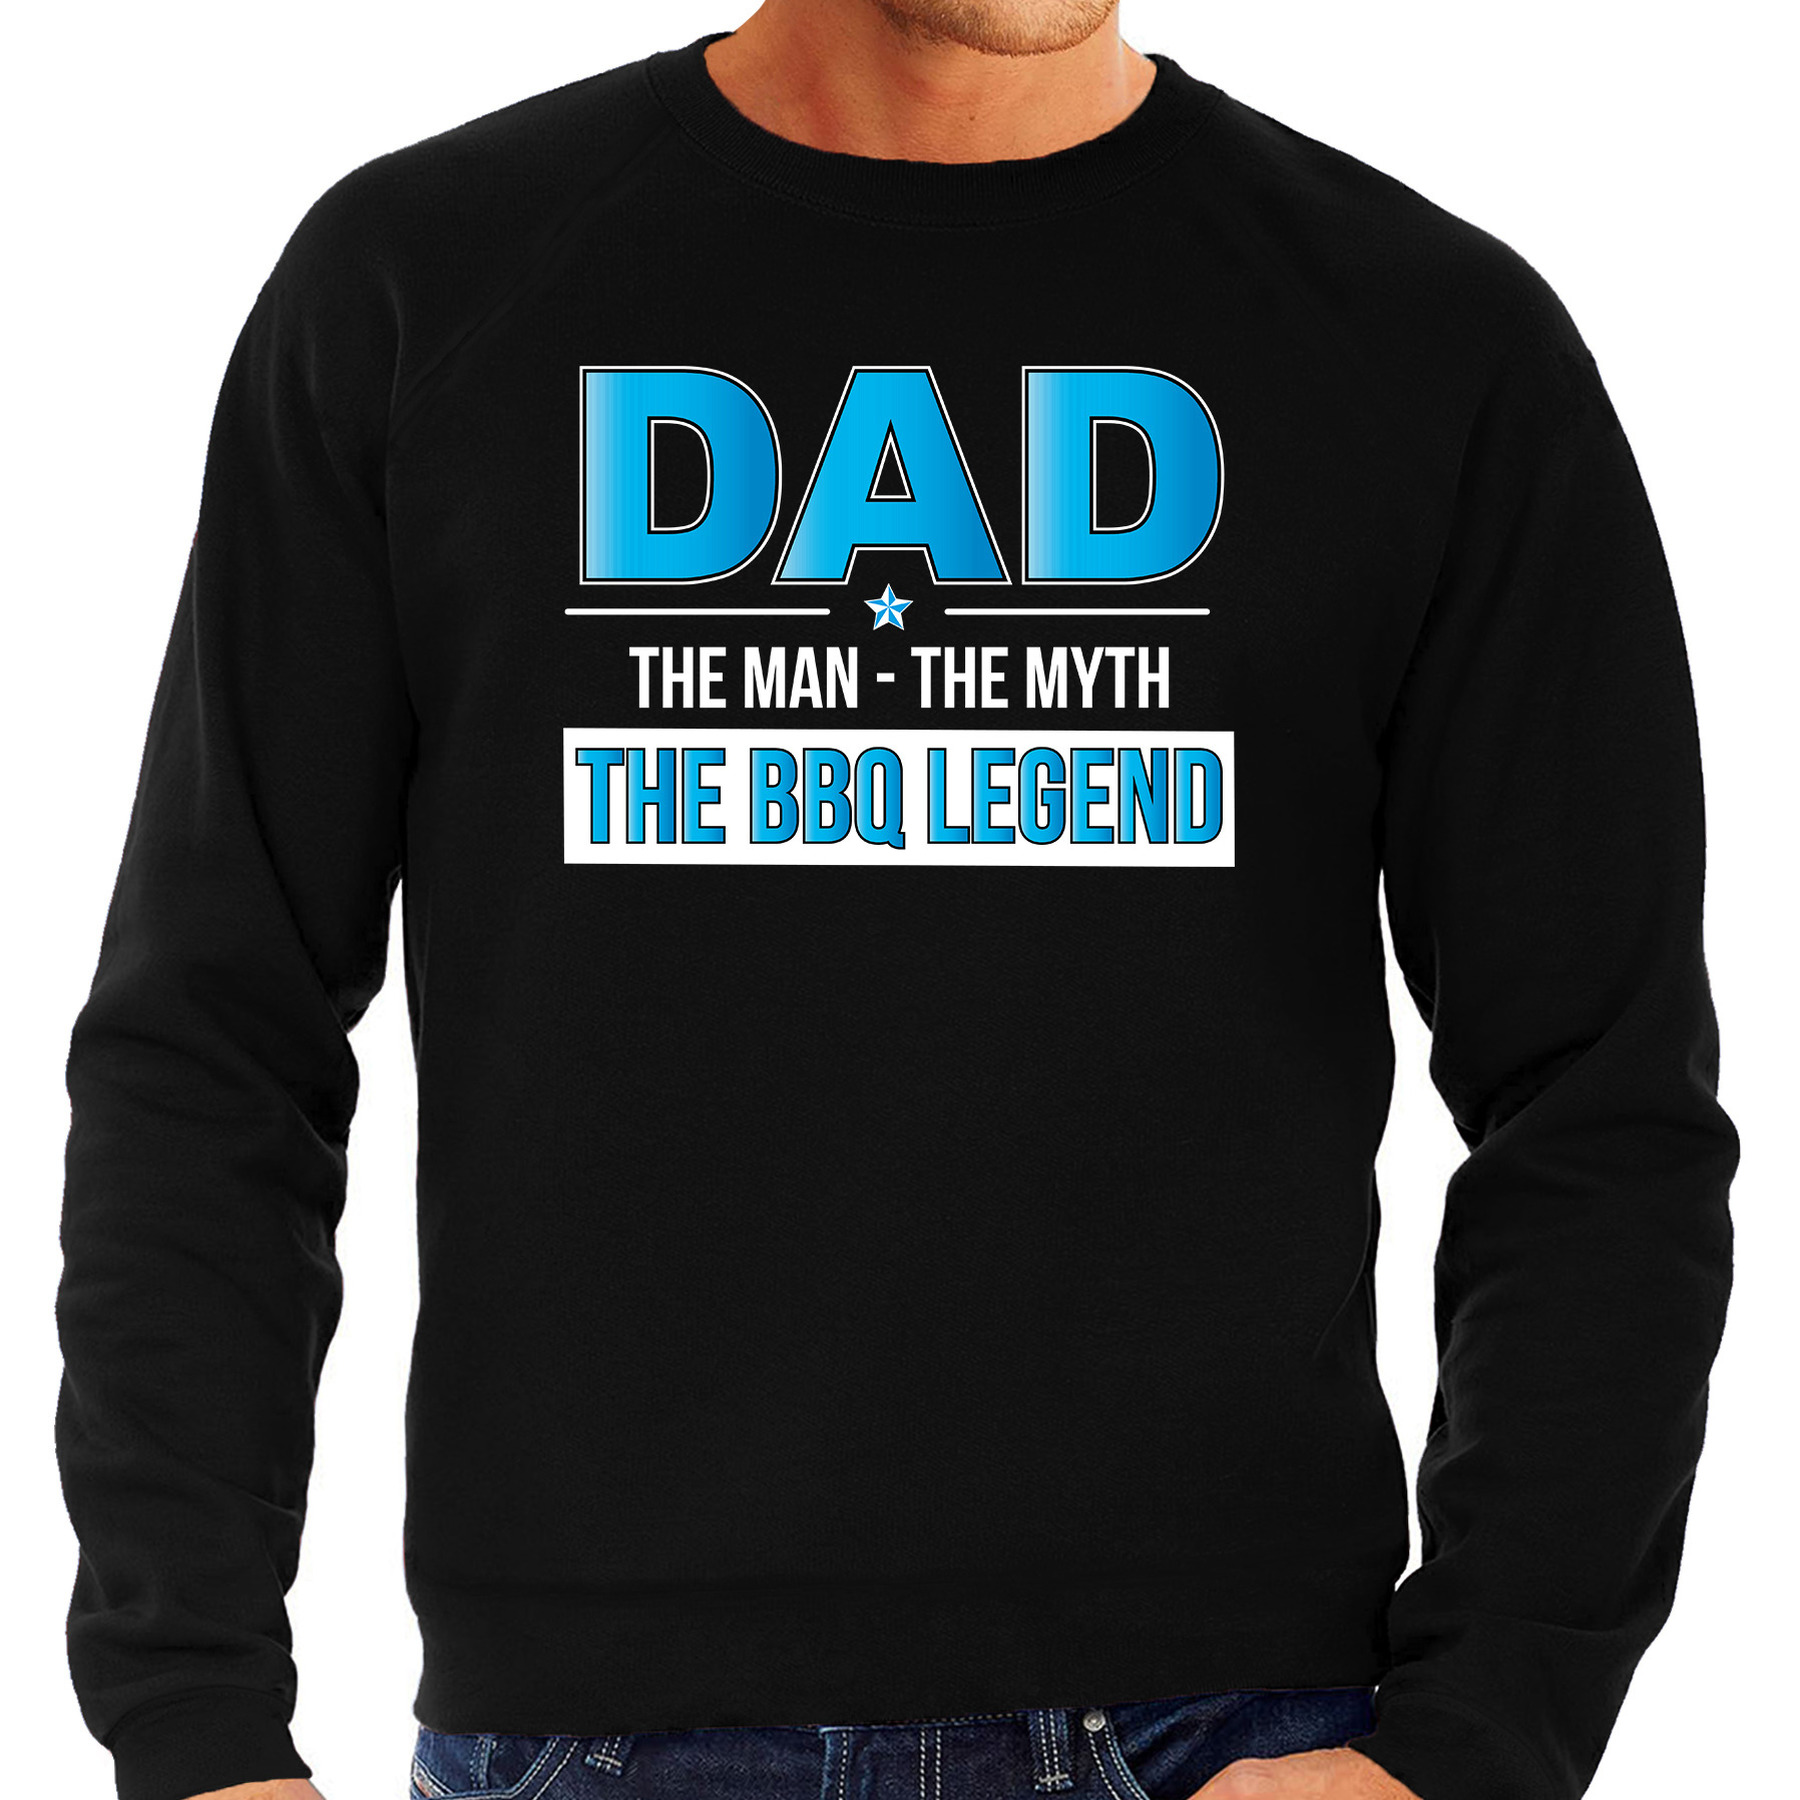 The bbq legend bbq-barbecue cadeau sweater-trui zwart voor heren